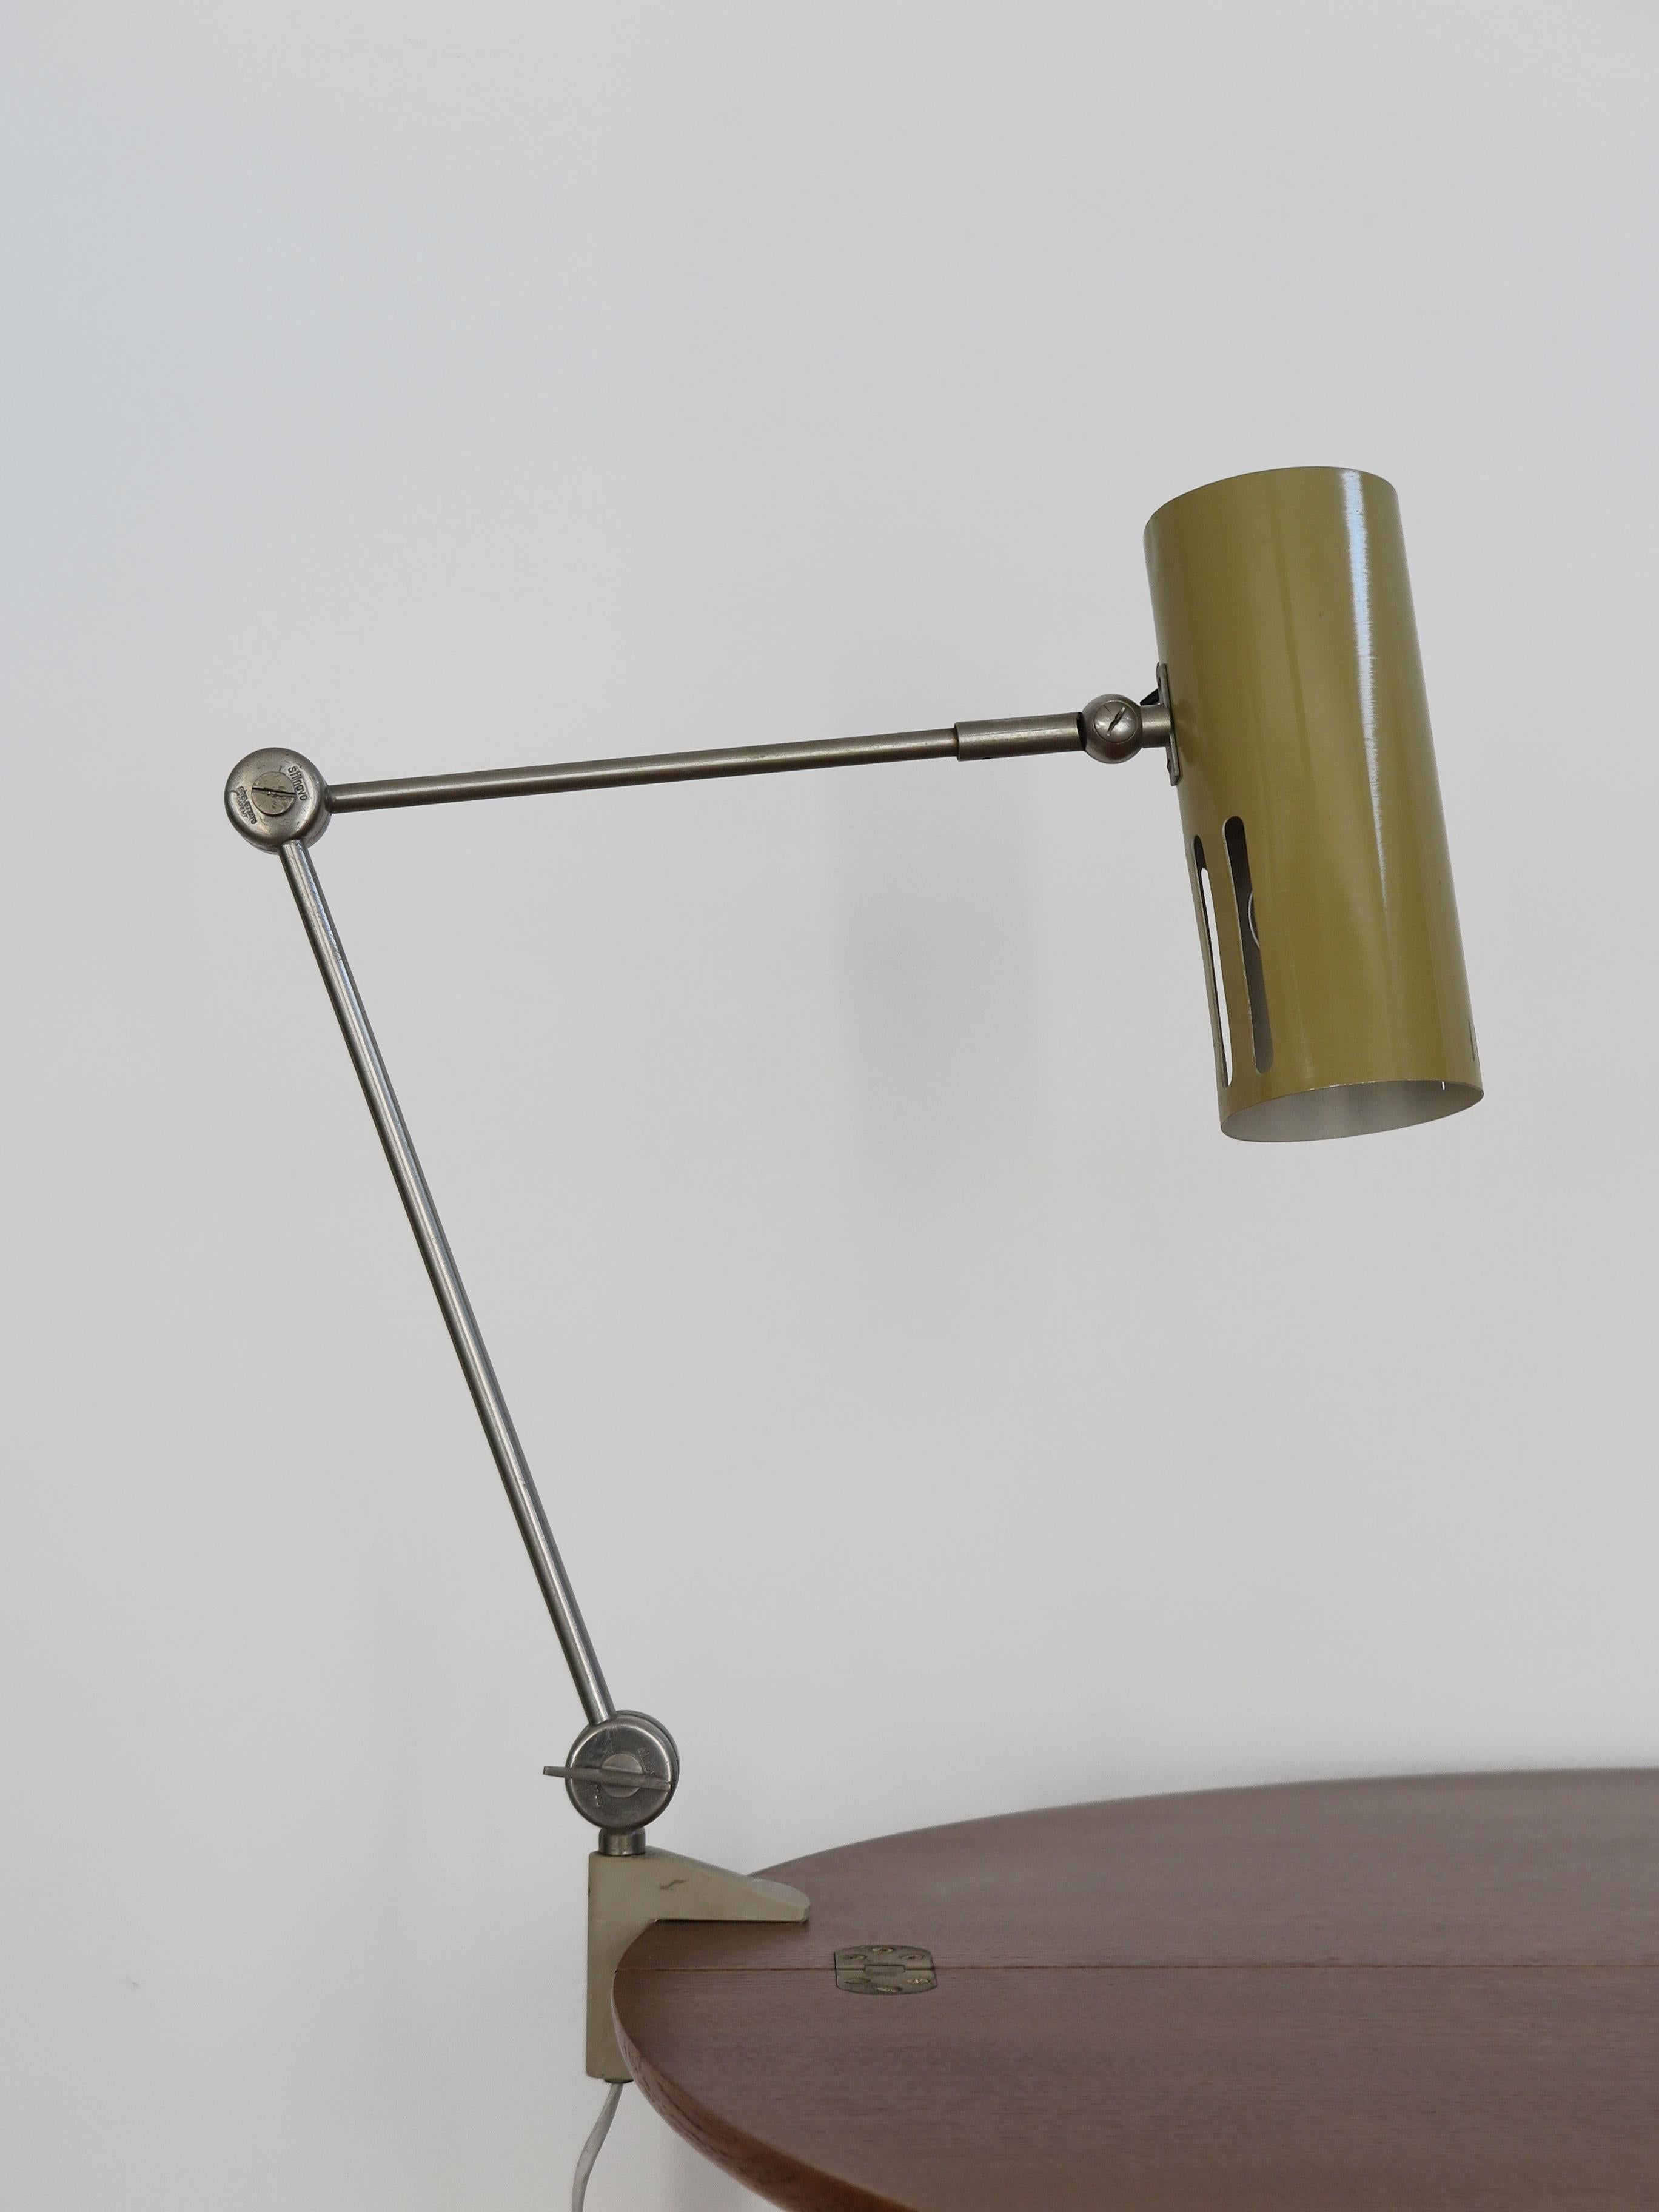 Italian Stilnovo Midcentury Modern Metal Clamp Table Lamp 1950s For Sale 5